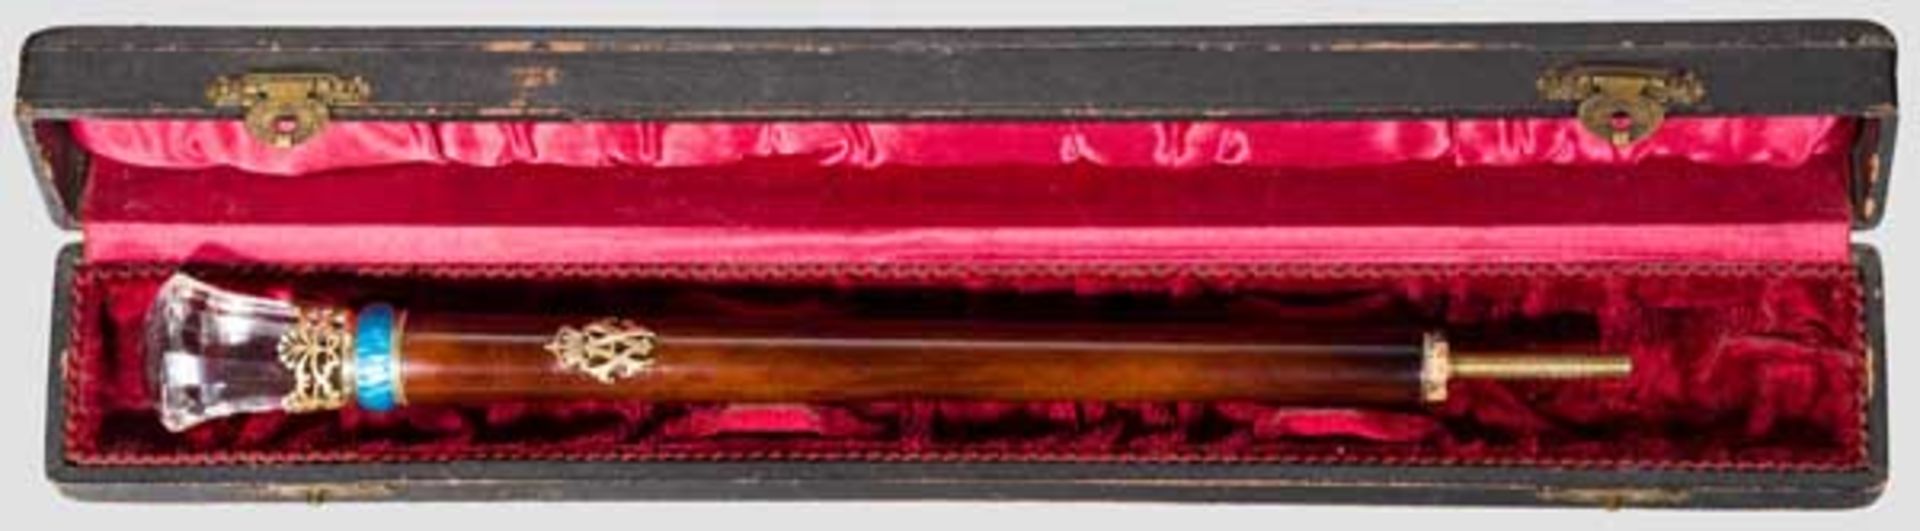 Kaiserin Auguste Victoria - Schirmgriff mit Kristallknauf Diamantartig geschliffener, reich